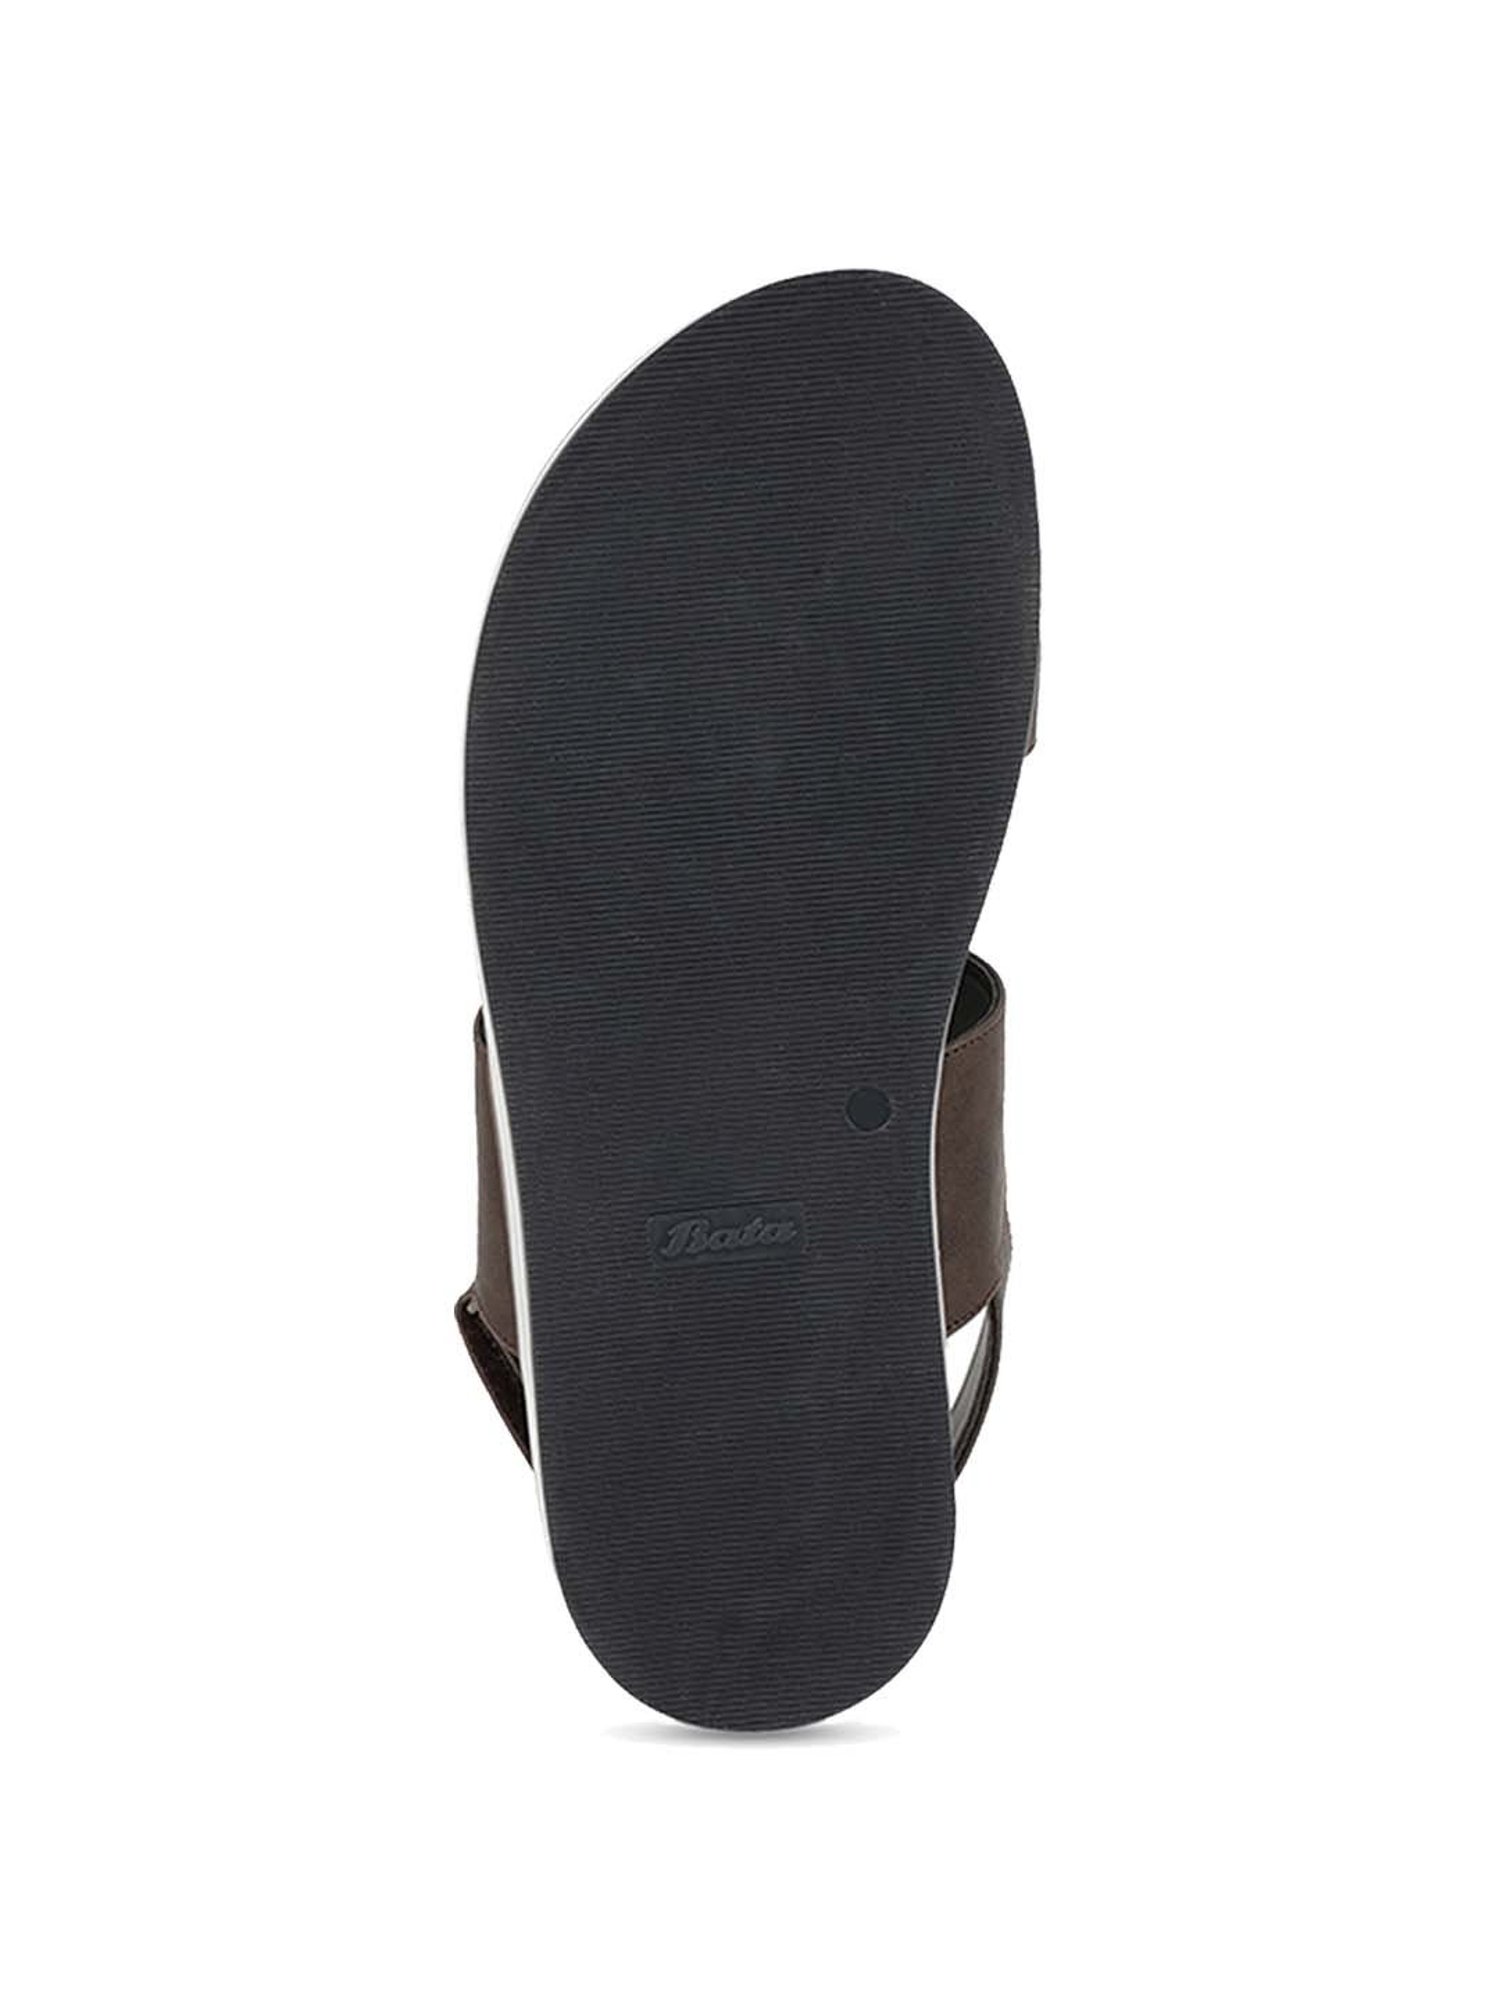 Bata Mens Casual Leather Slipper 875 6032 Review | GTrendz | Tamil |  Footwear Exclusive | Gunasekar - YouTube